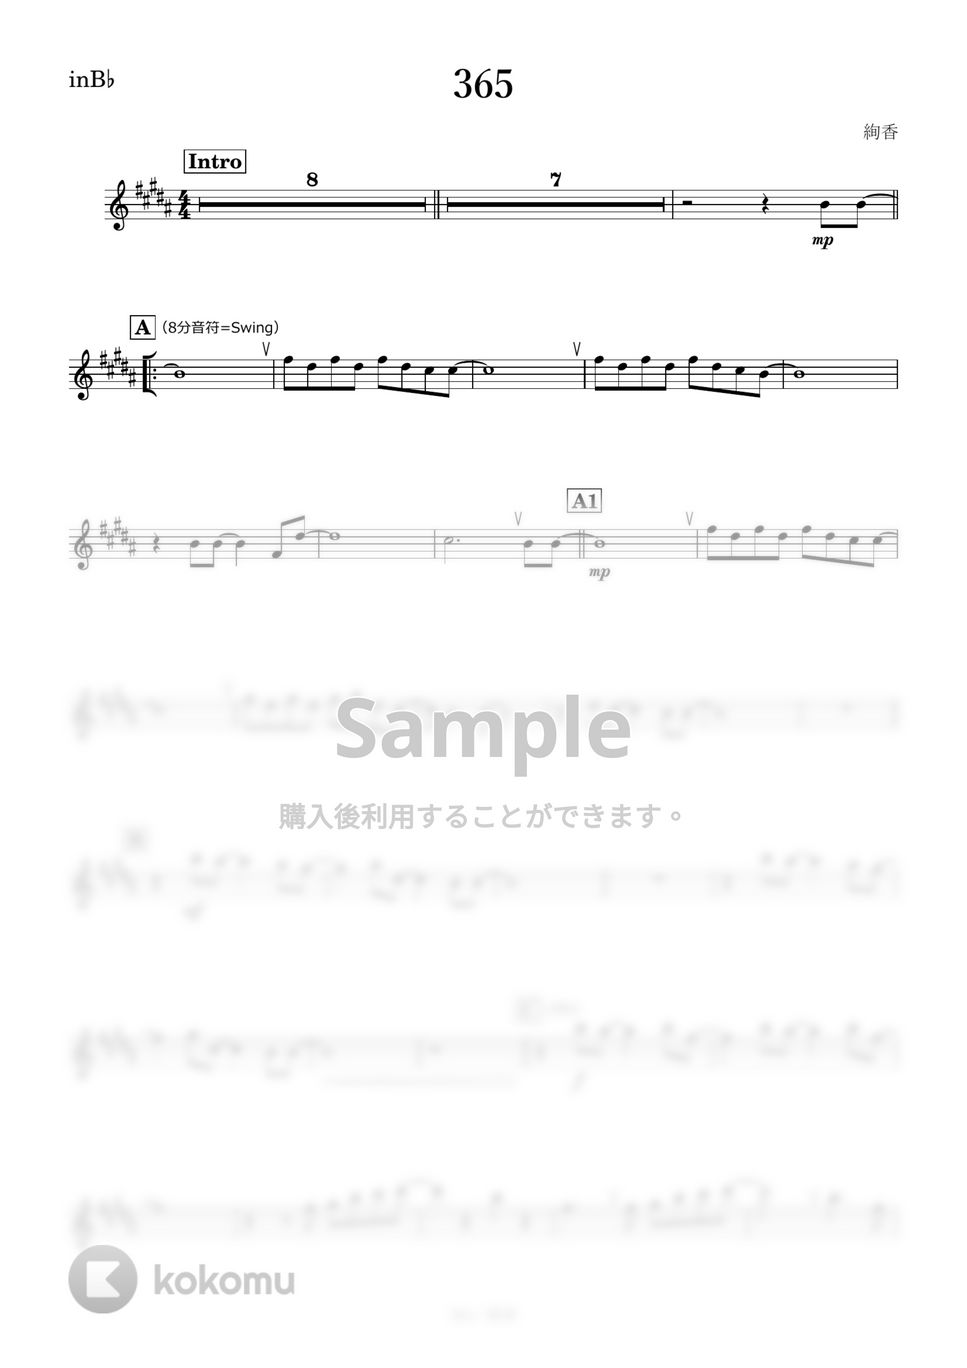 絢香 - 365 (B♭) by kanamusic